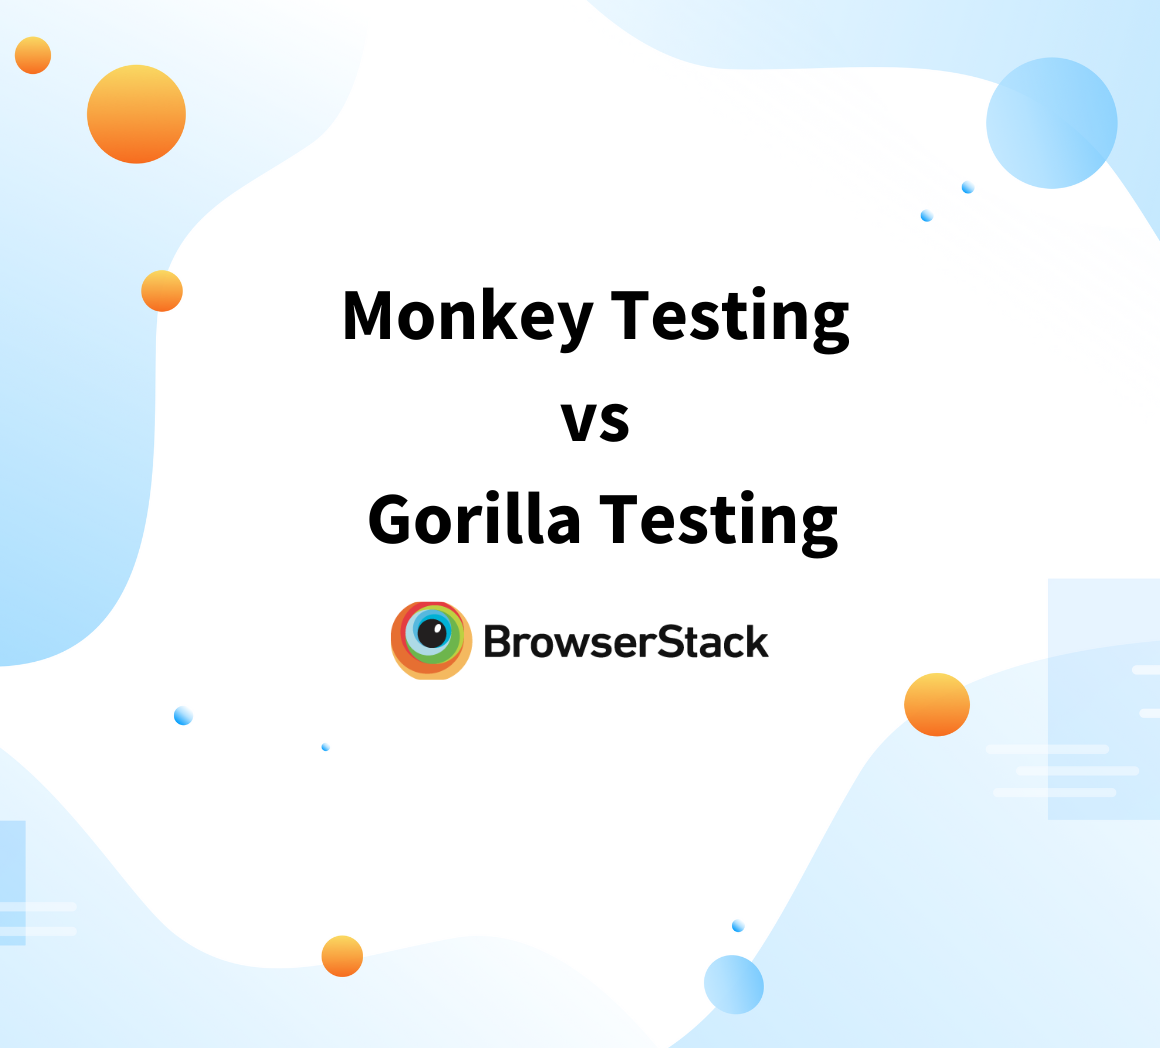 Monkey testing vs Gorilla testing